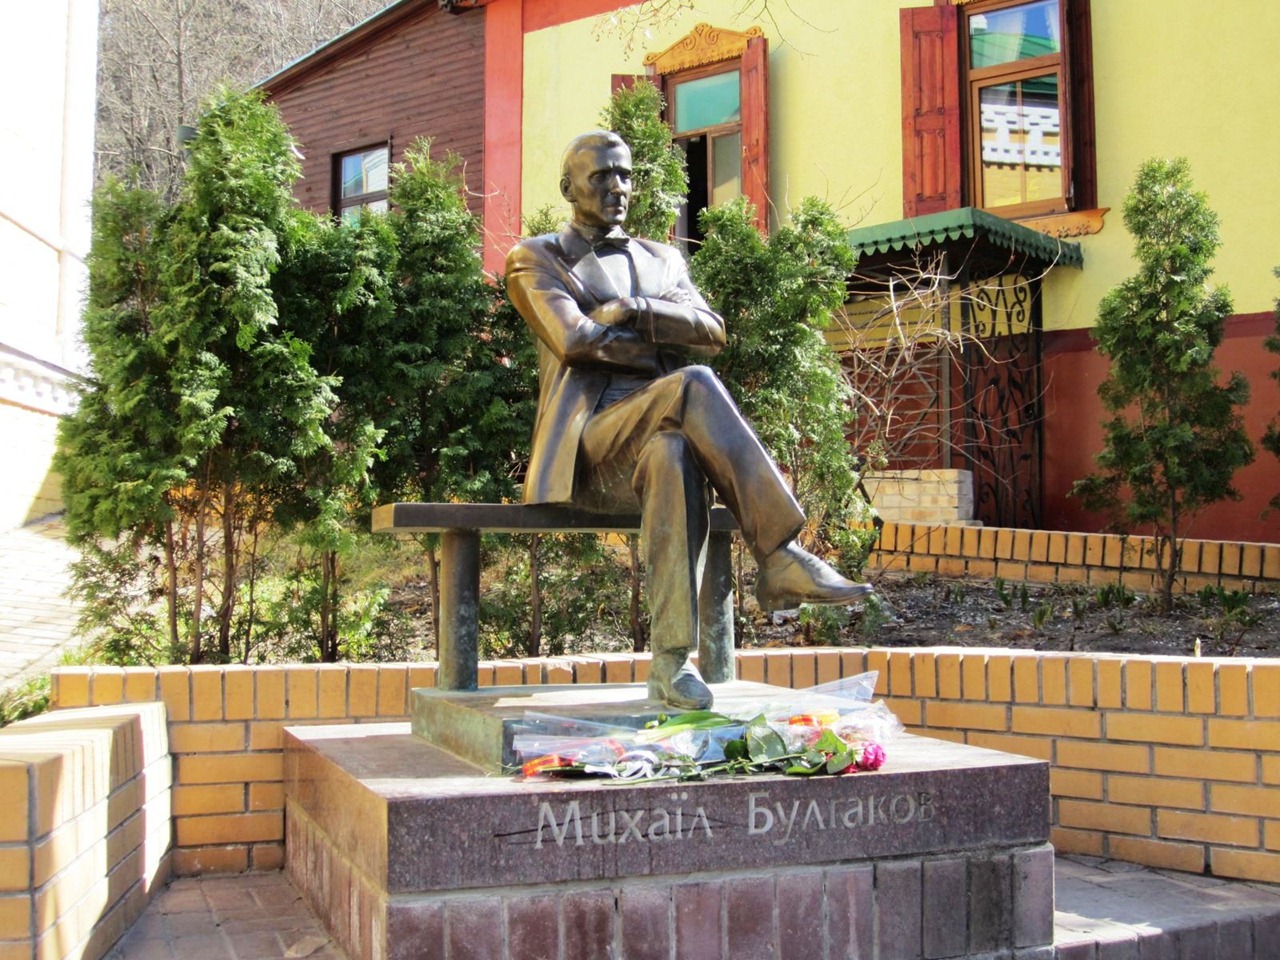 Памятник Булгакову